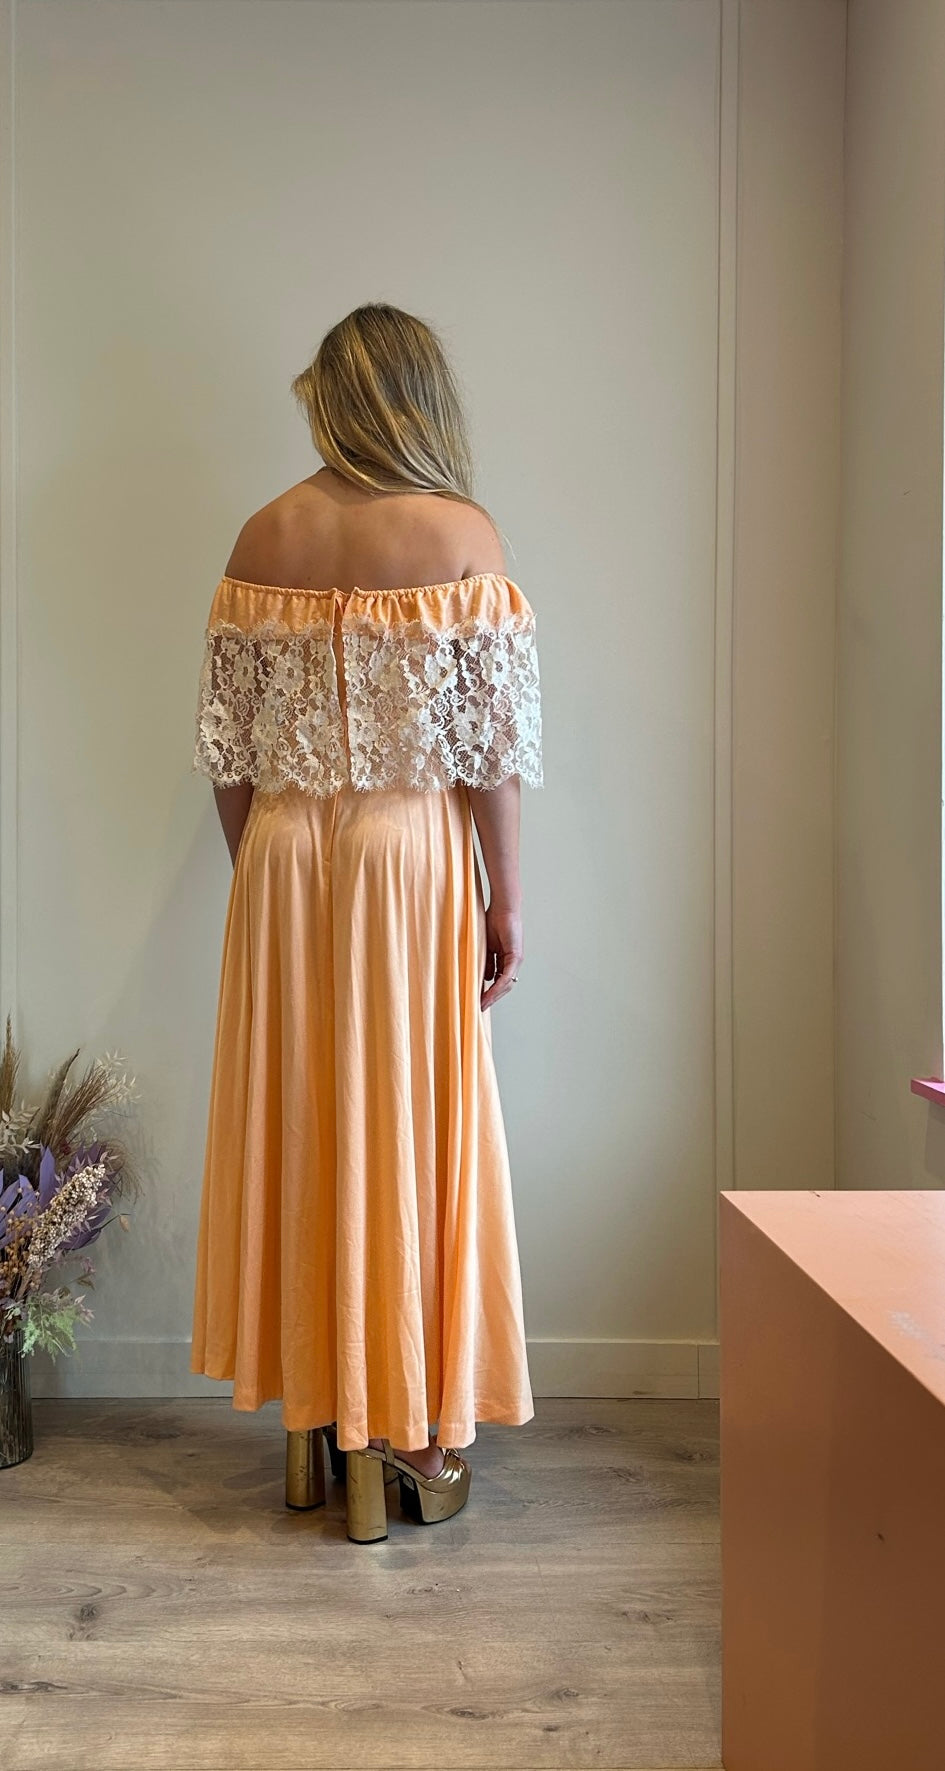 Spice Vintage Apricot Off Shoulder Dress with Lace Trim